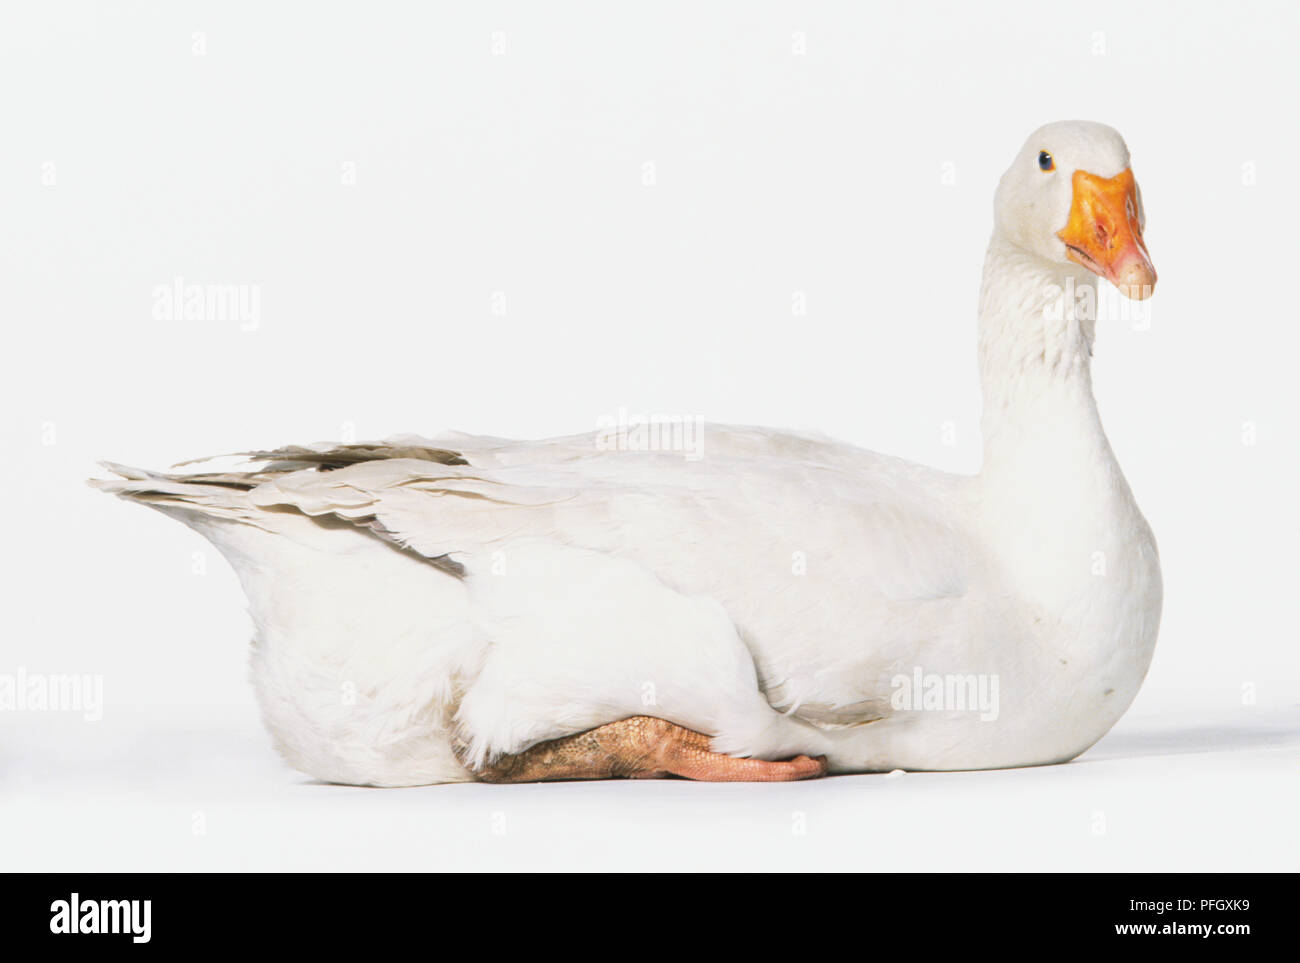 A white goose with orange beak. Stock Photo